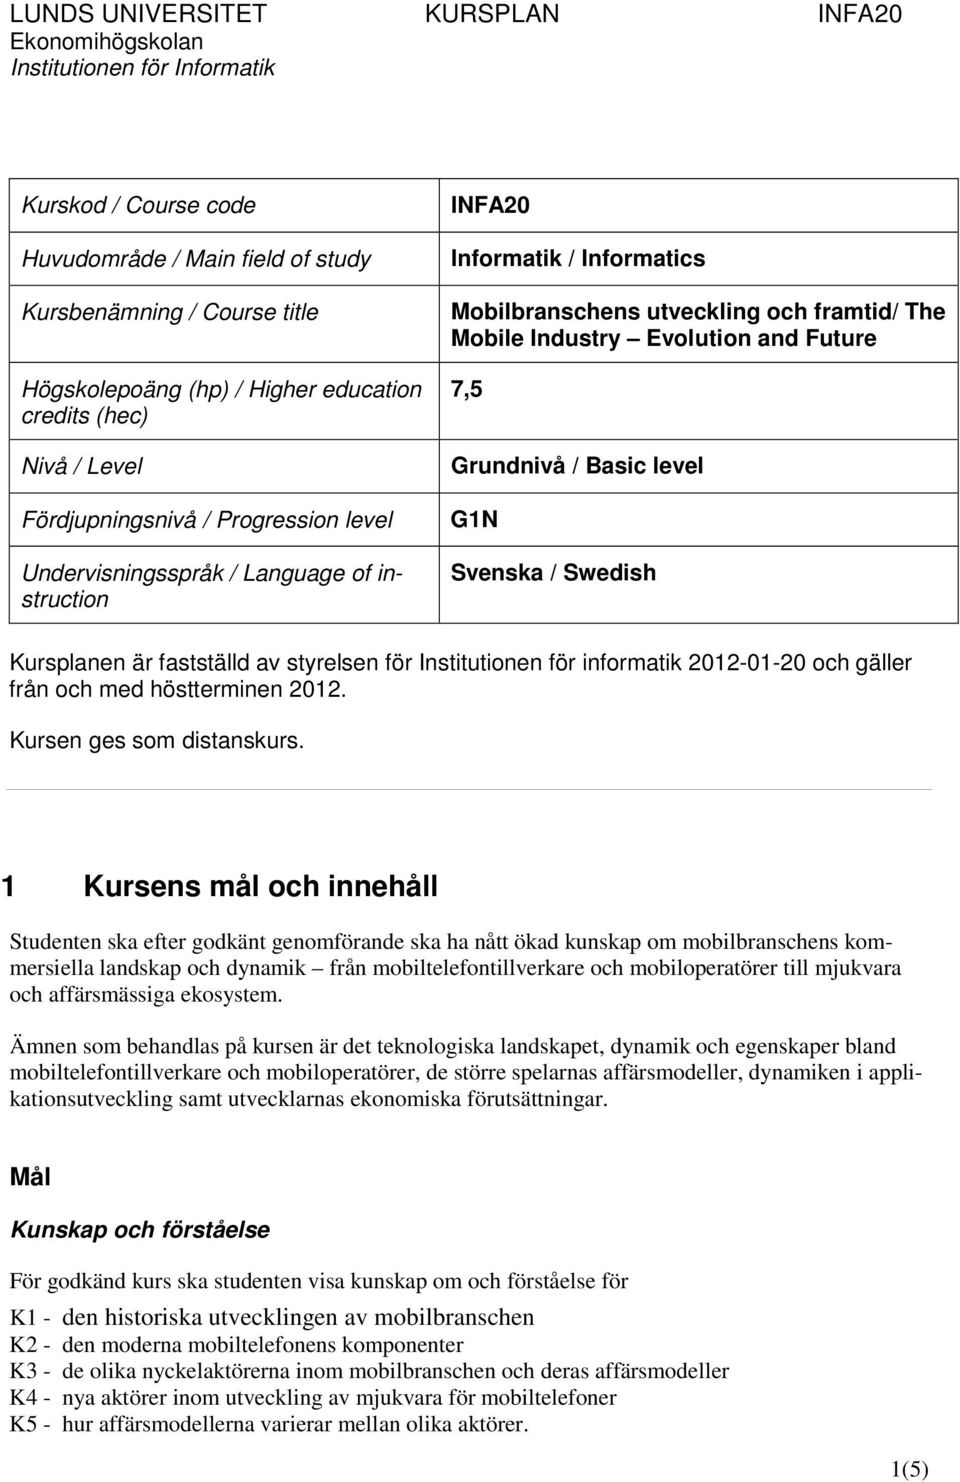 Swedish Kursplanen är fastställd av styrelsen för Institutionen för informatik 2012-01-20 och gäller från och med höstterminen 2012. Kursen ges som distanskurs.